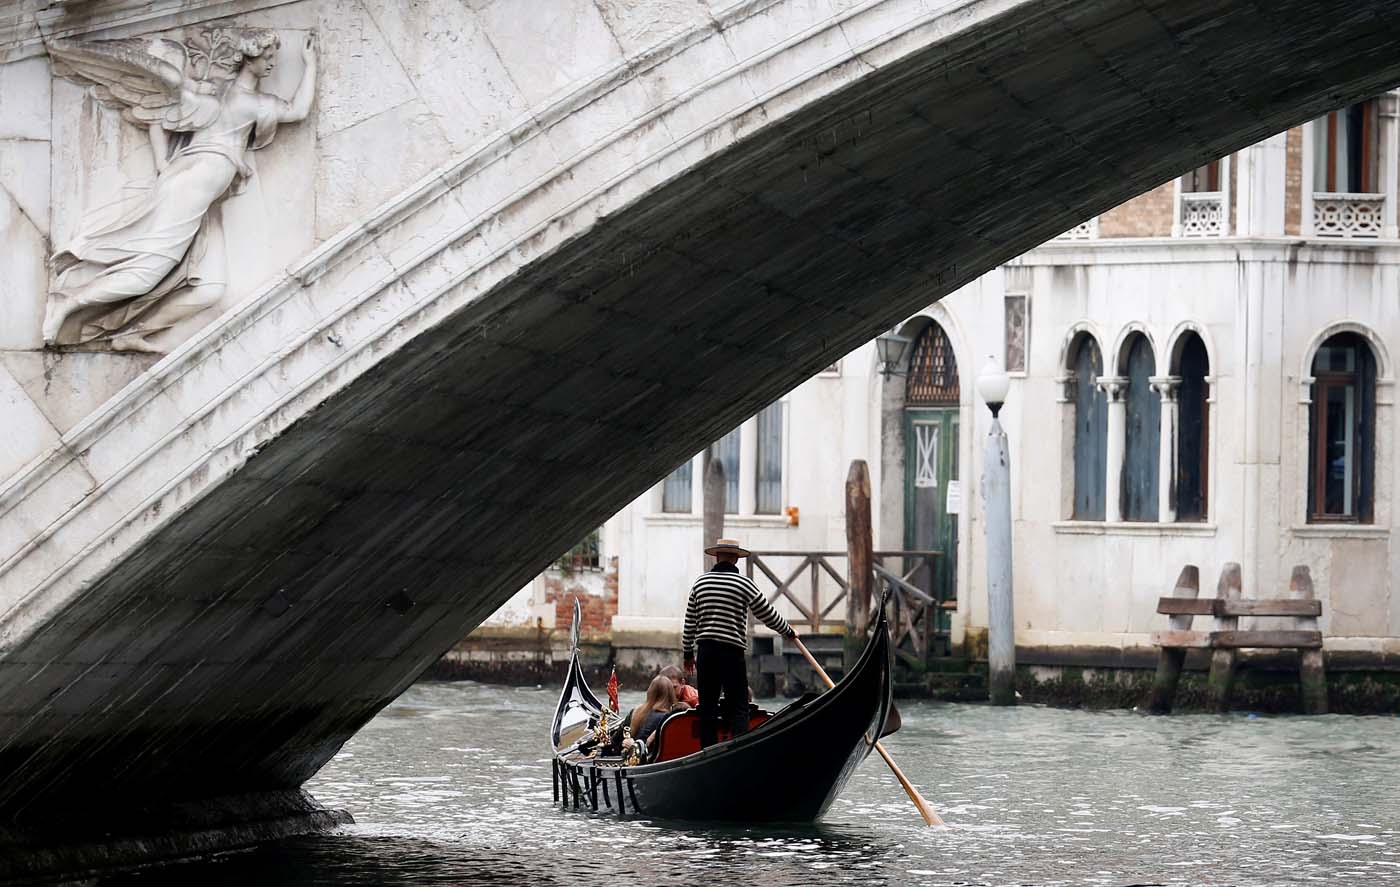 FILE PHOTO: A gondolier rows past the Rialto bridge in Venice, Italy October 13, 2013. REUTERS/Stefano Rellandini/File Photo